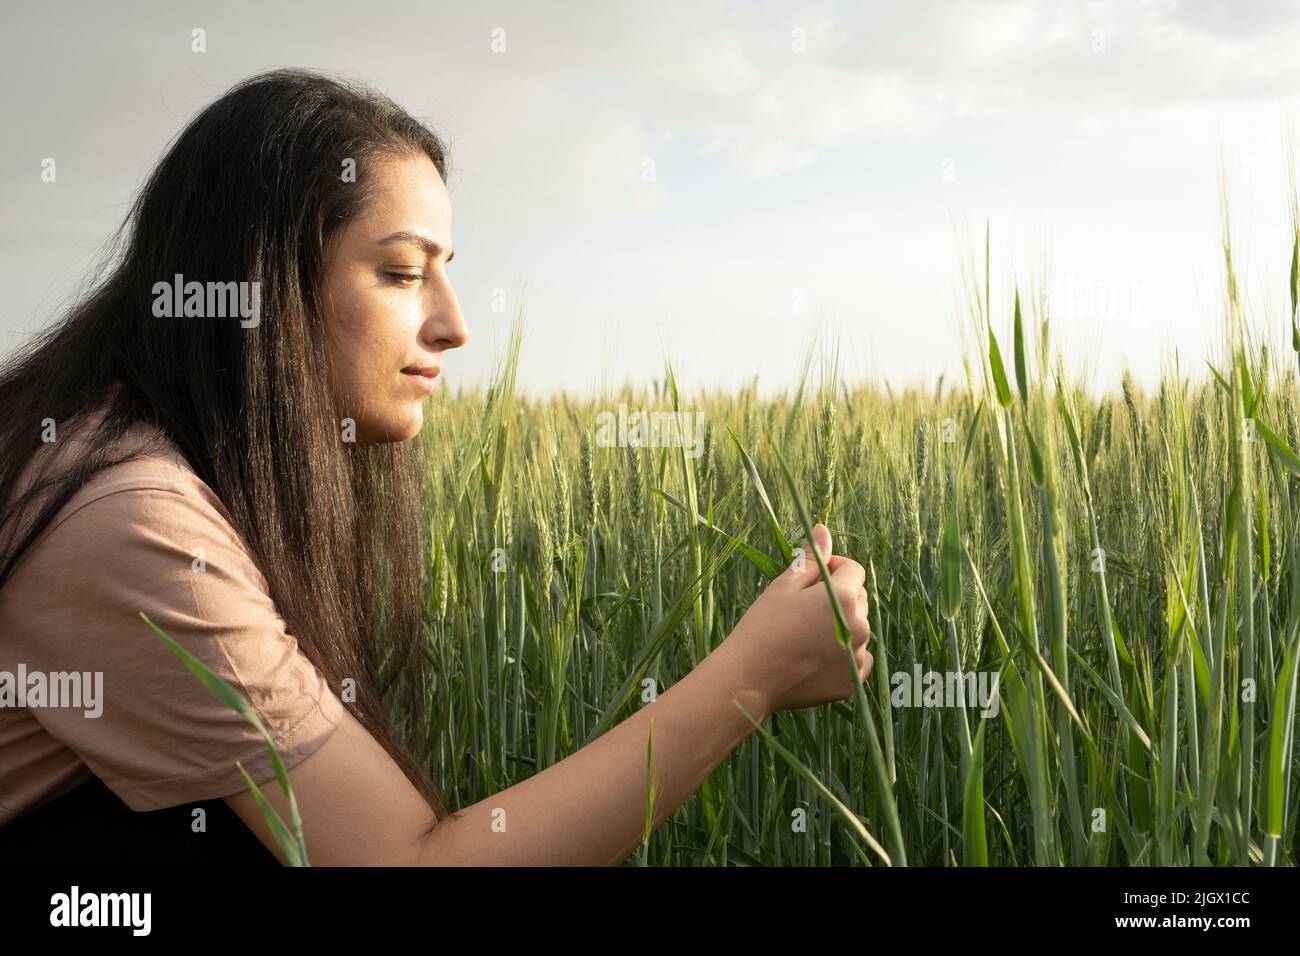 Agrónomo femenino, en campo de trigo verde agrónomo femenino que sostiene y controla mazorcas de trigo. Controla la productividad de sus cultivos. Agricultura moderna. Foto de stock